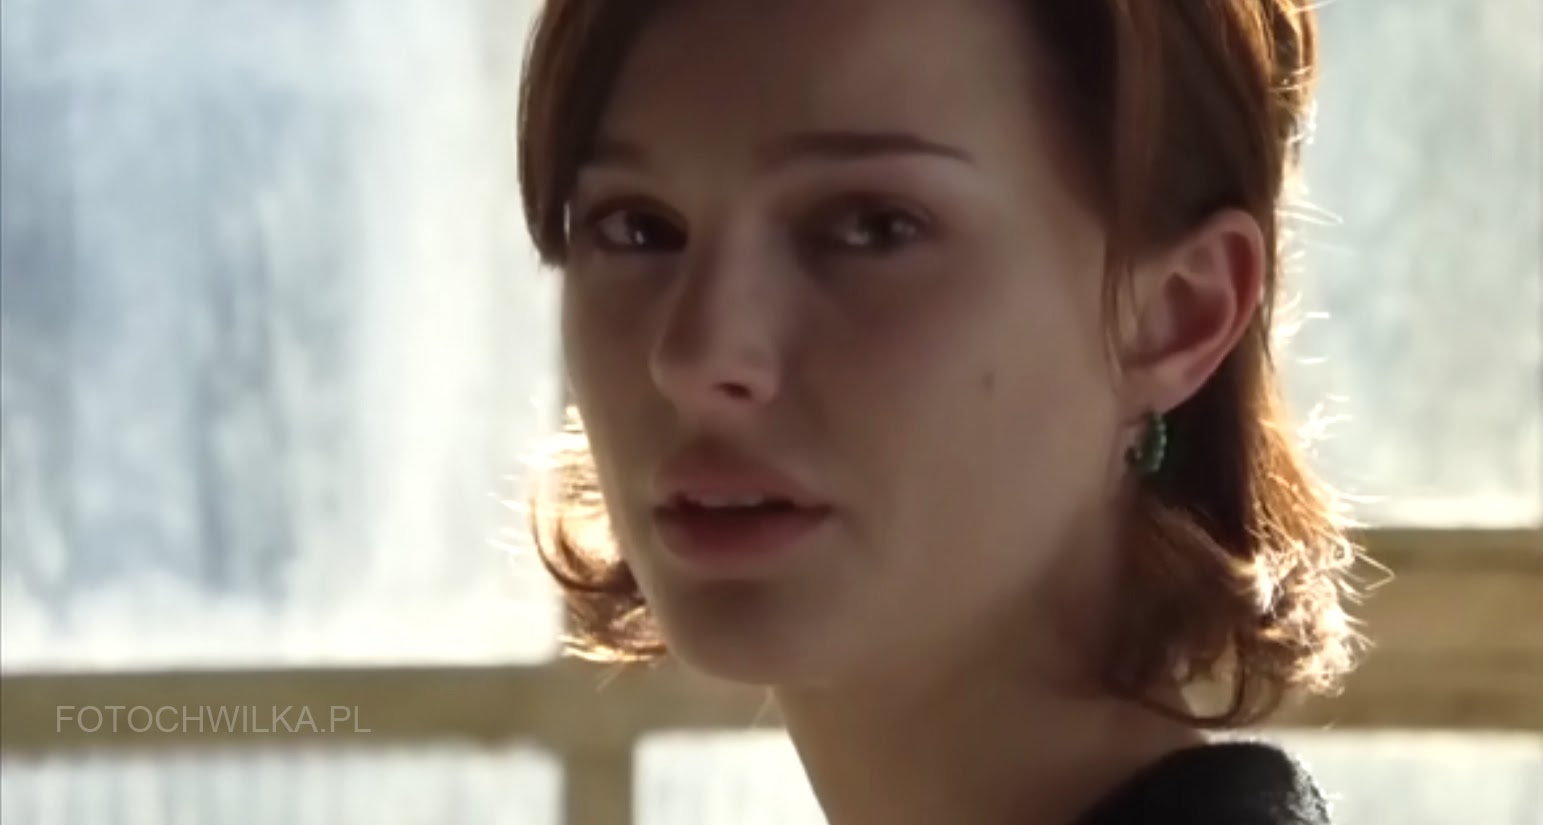 Scena z filmu "Bliżej" (Closer) - Natalie Portman